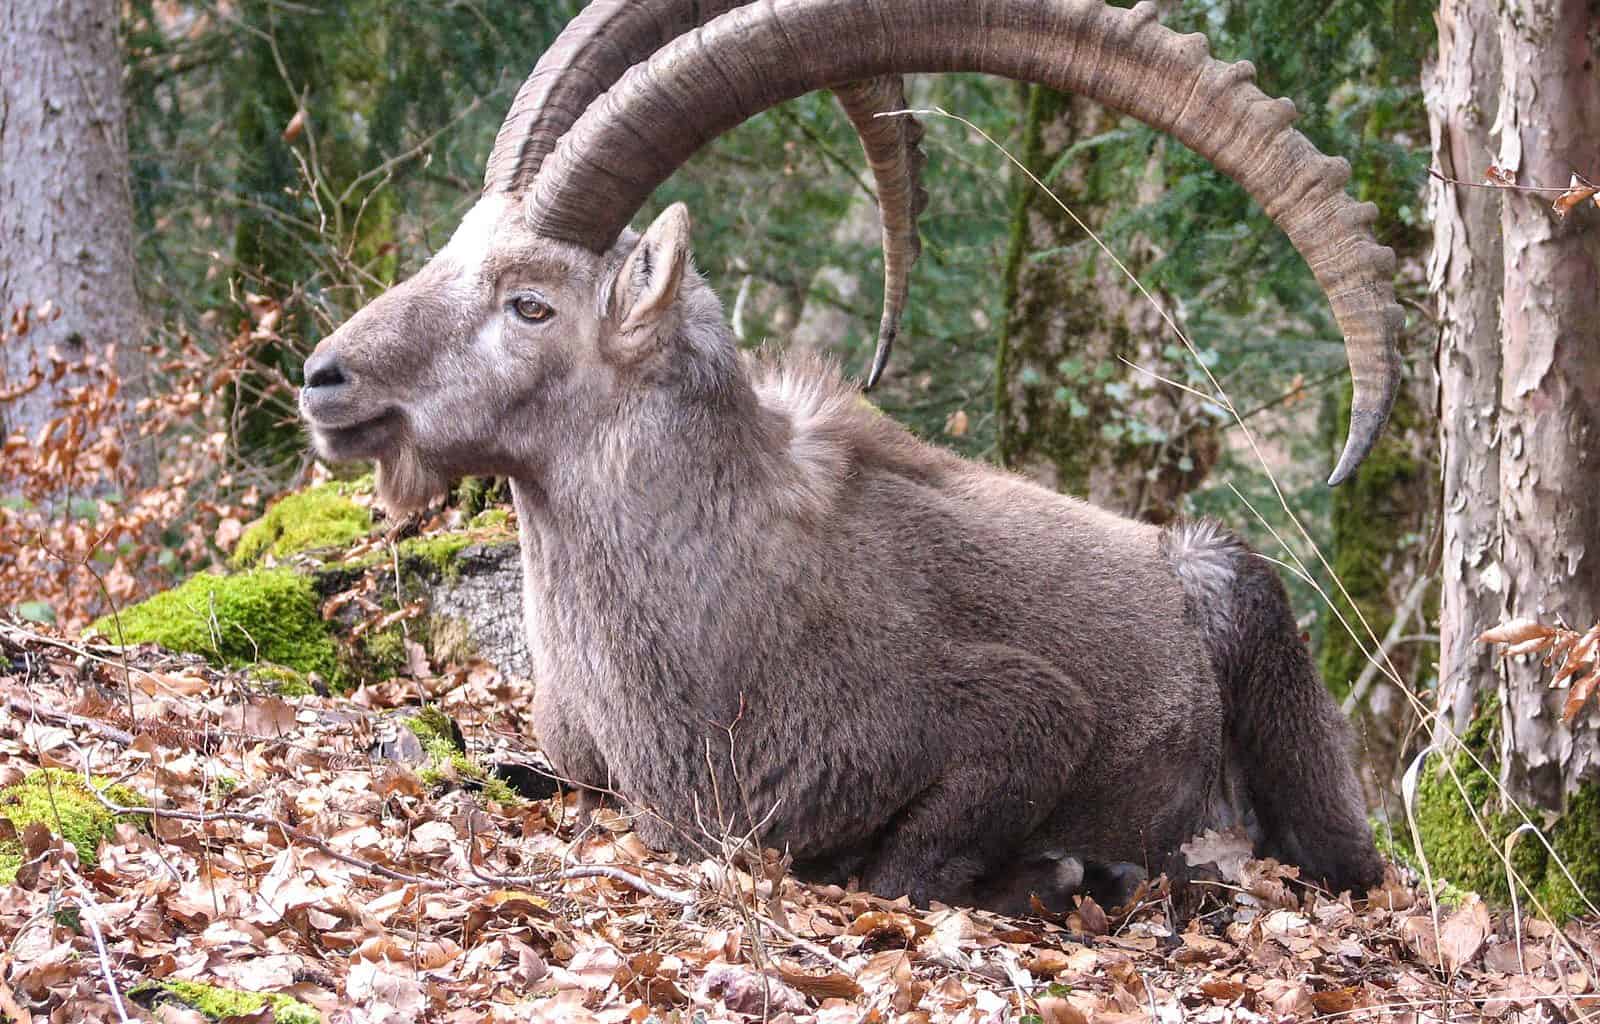 Pyrenana Wild Goat: An Example for de-extinction as a way forward?